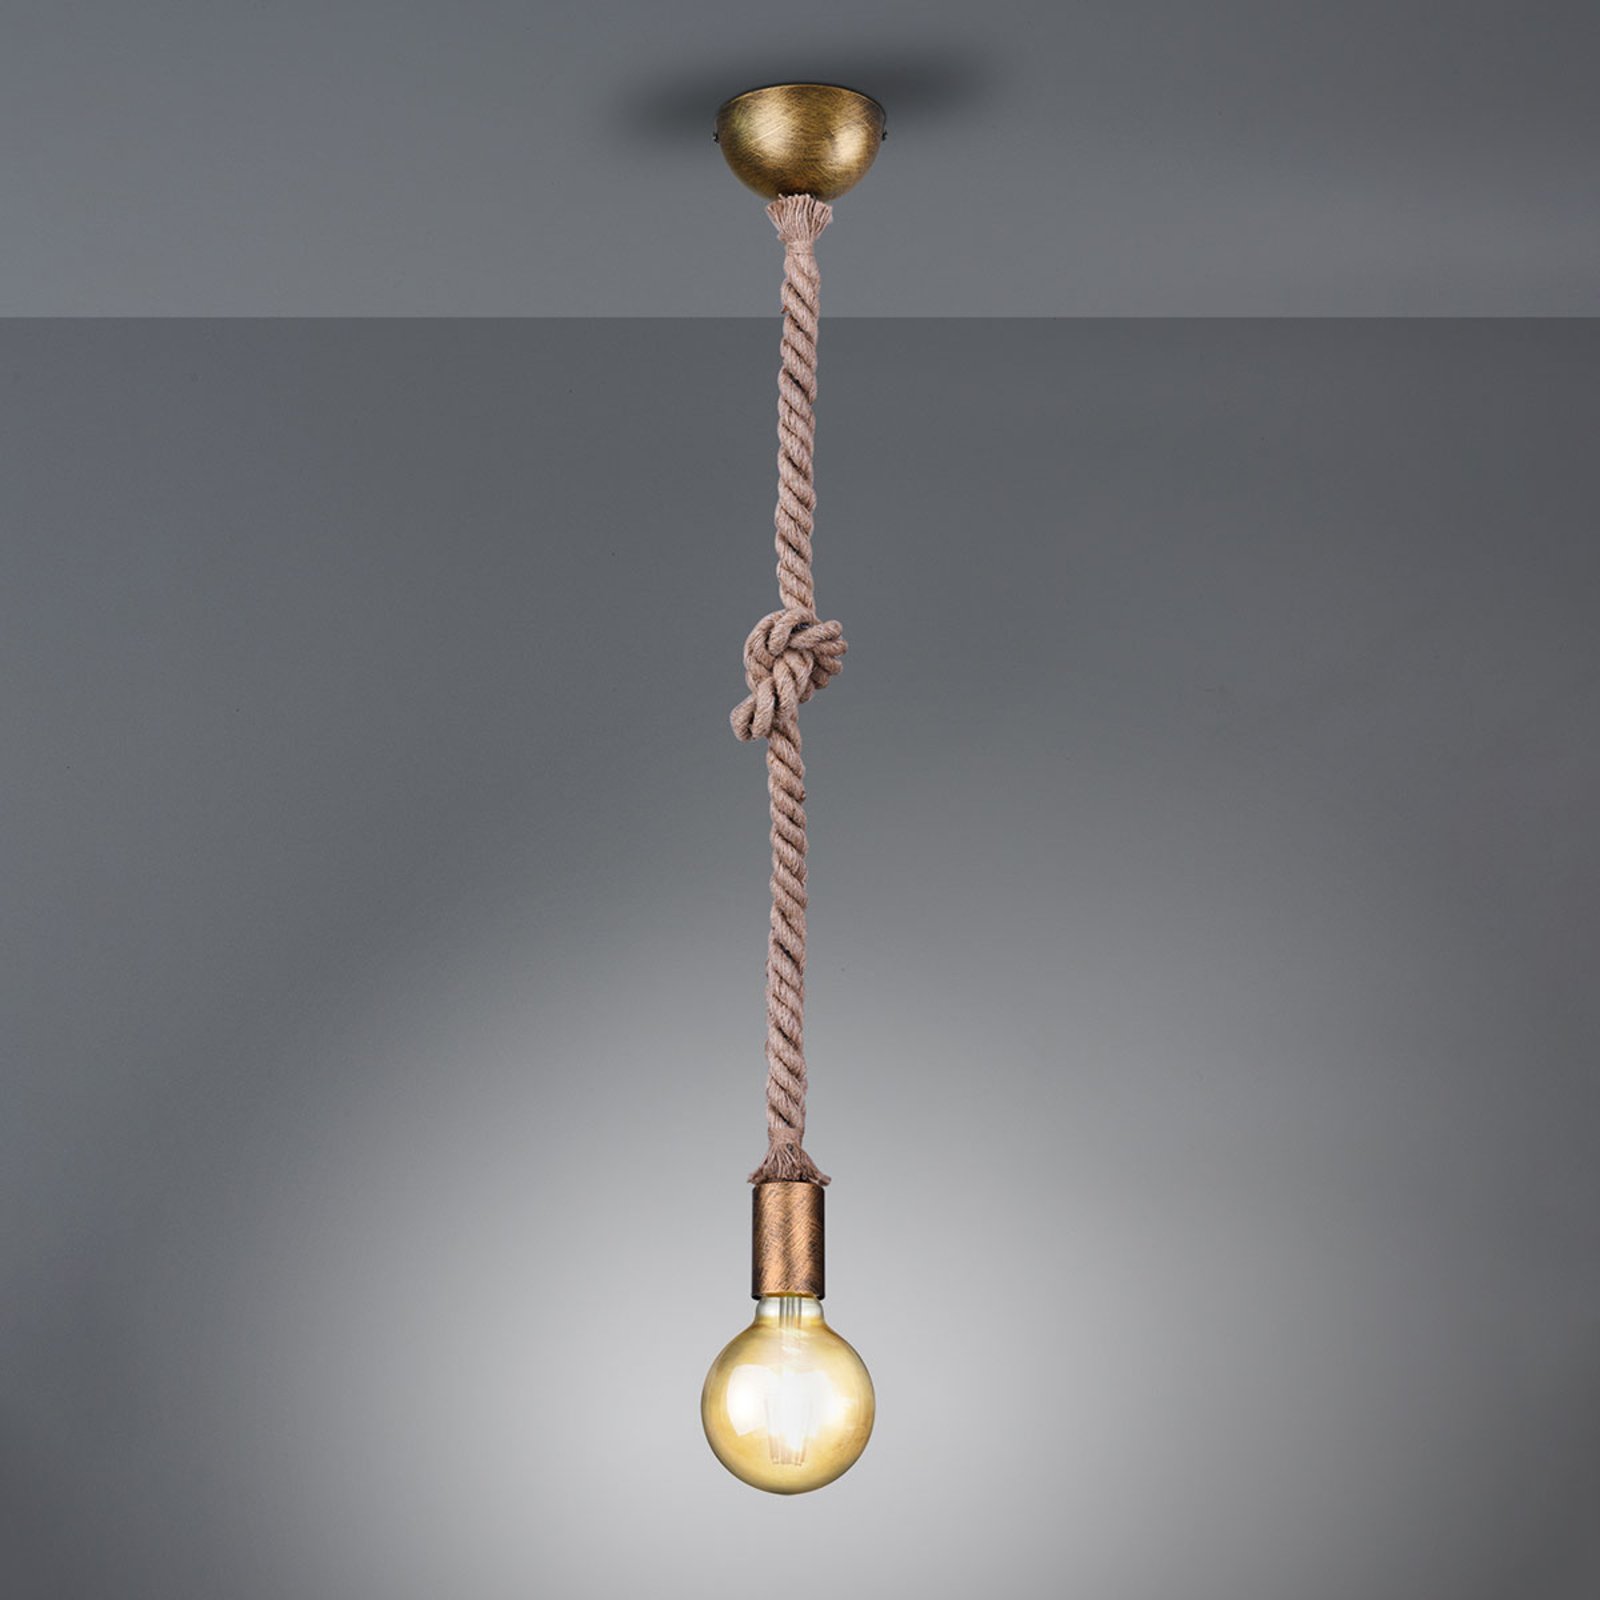 Lampă pendul Rope cu cablu decorativ 1 bec